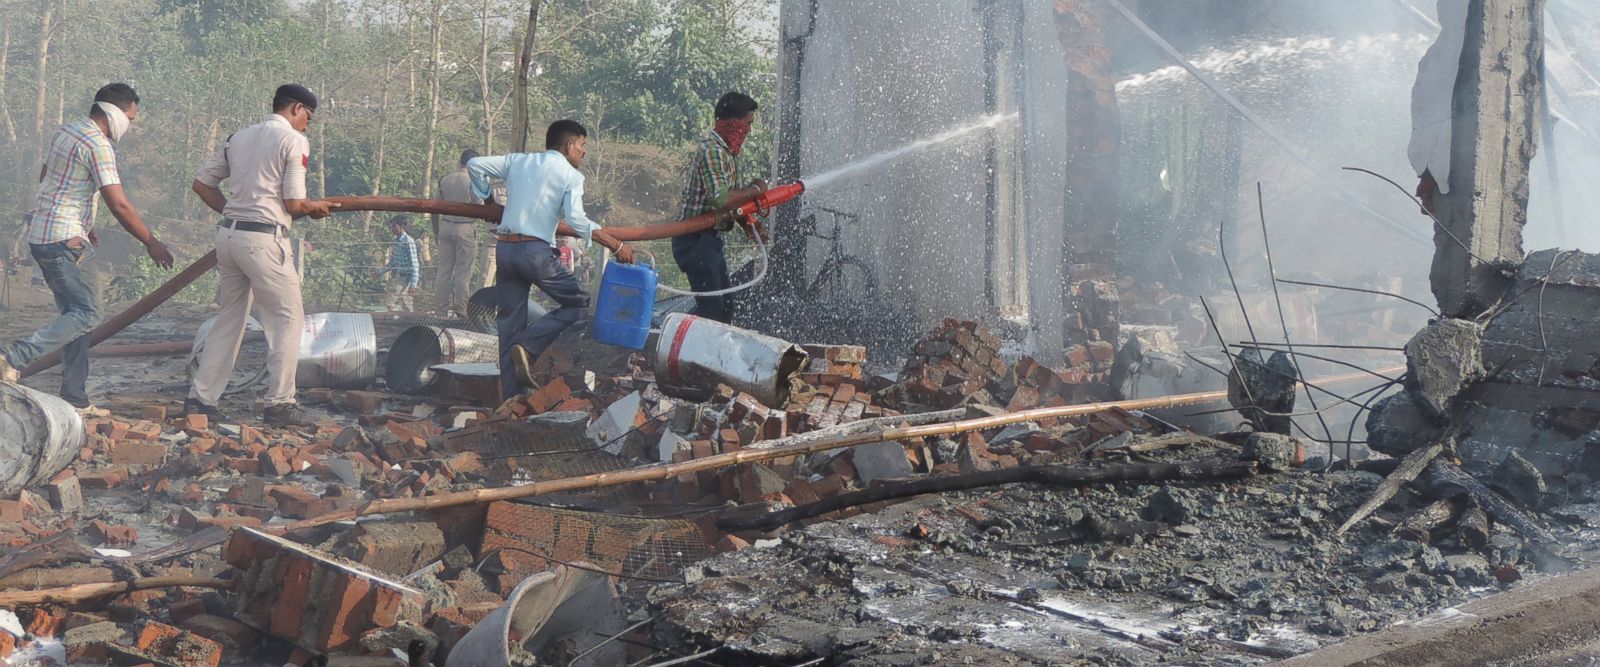 Έκρηξη σε εργοστάσιο στην Ινδία – 25 νεκροί